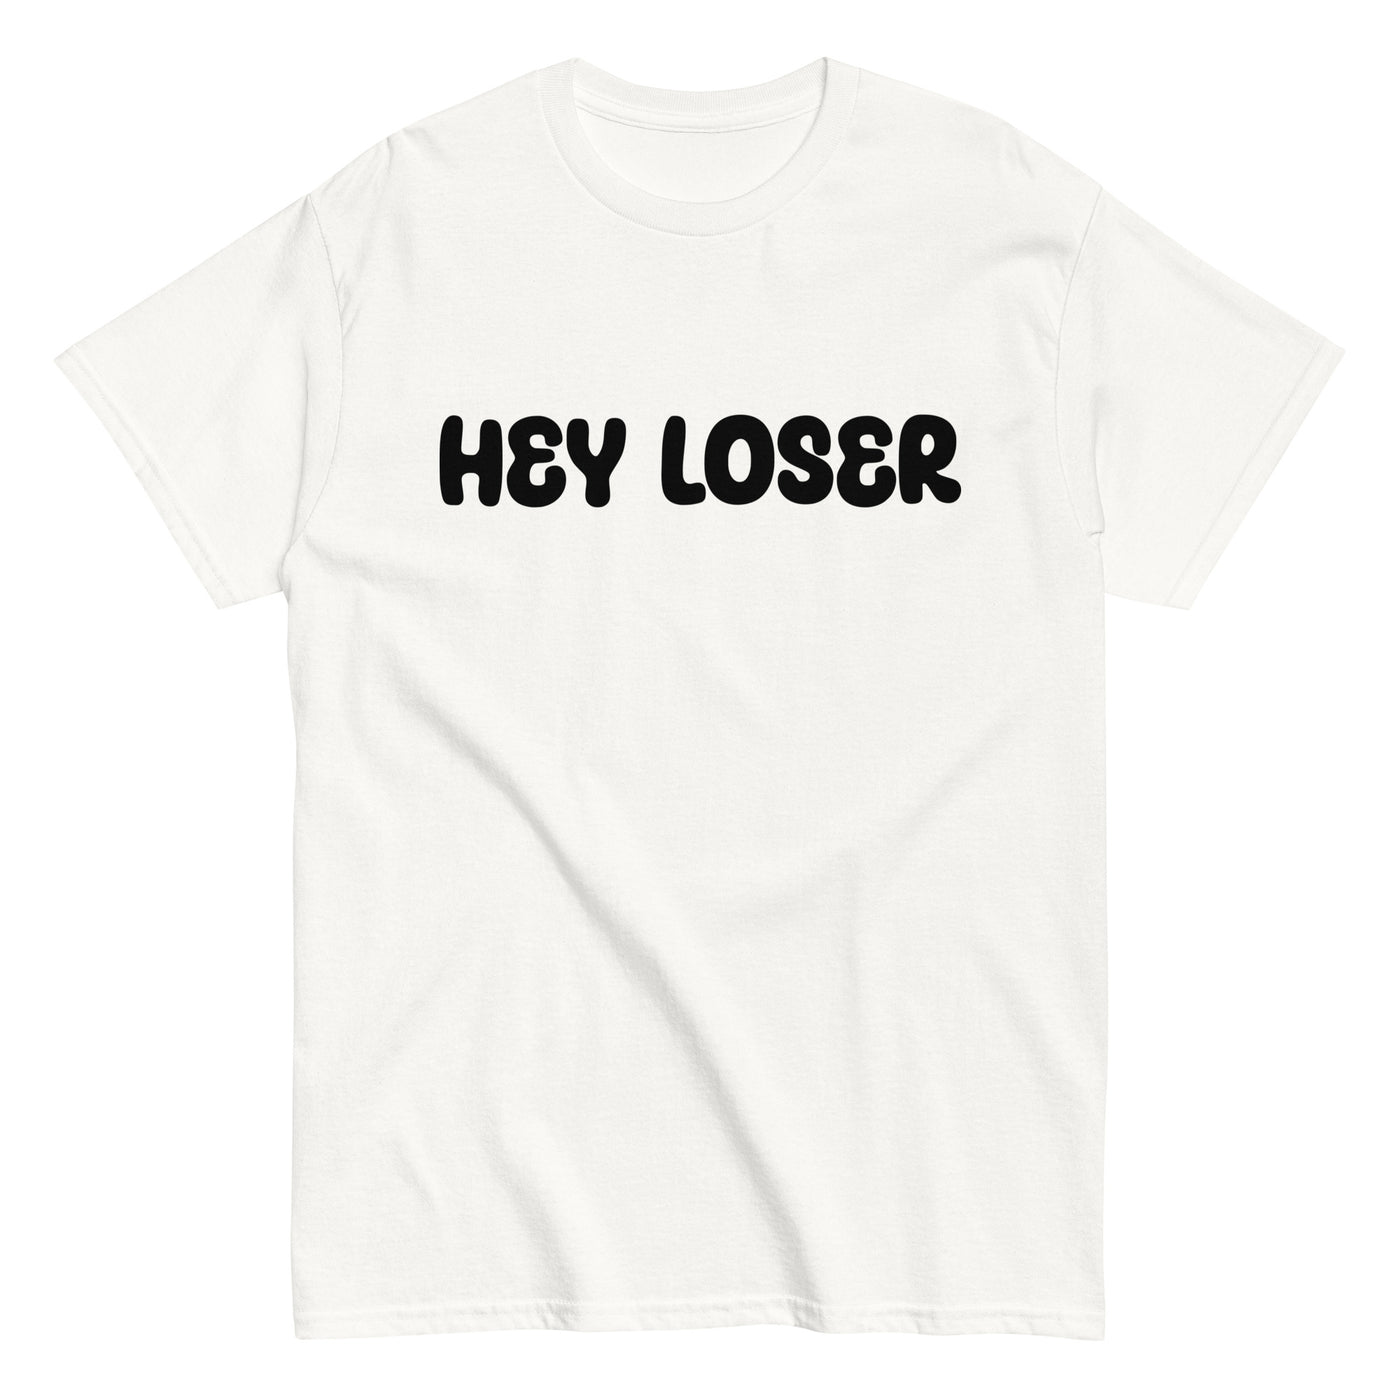 Joni Hesselgren | T-paita Valkoinen | Hey Loser